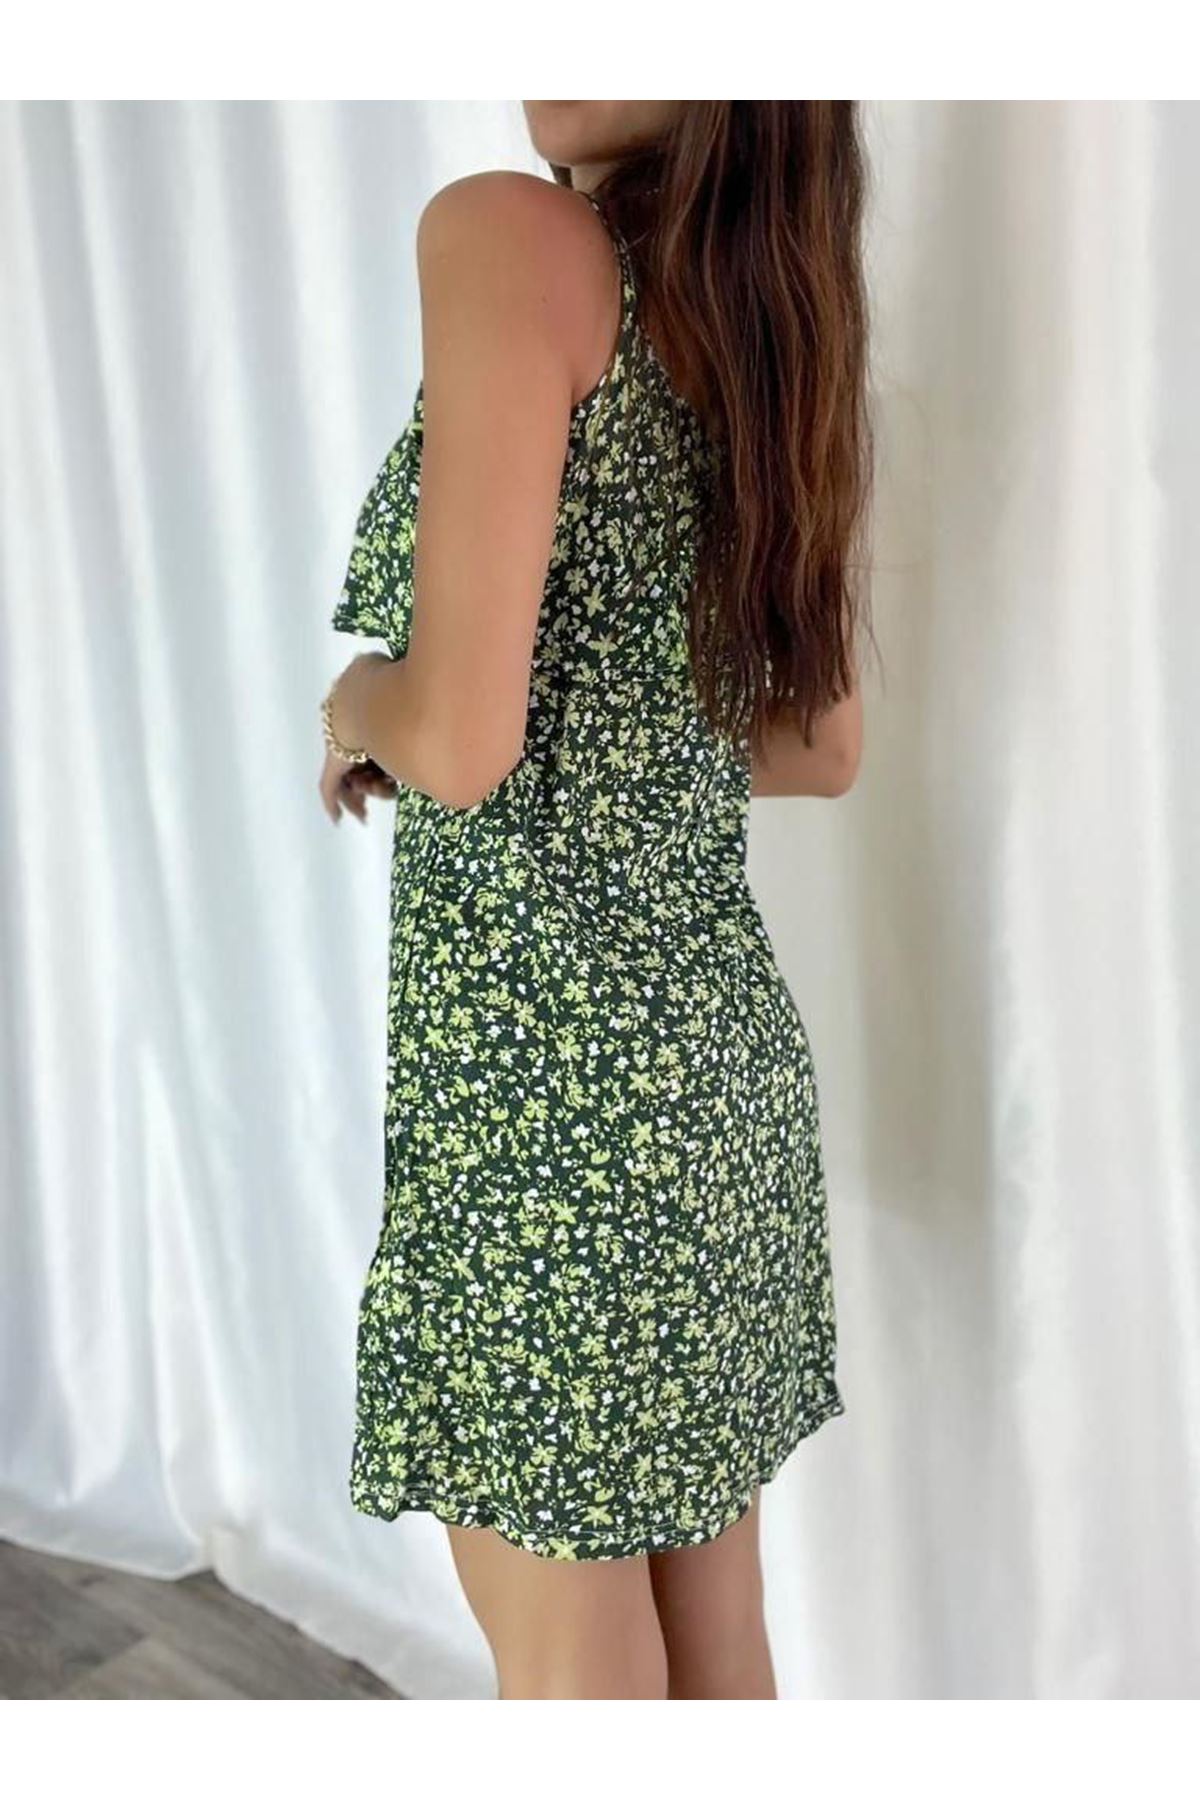 Kadın Yeşil Askılı Kısa Pelerin Model Yazlık Dokuma Elbise 6C-2114